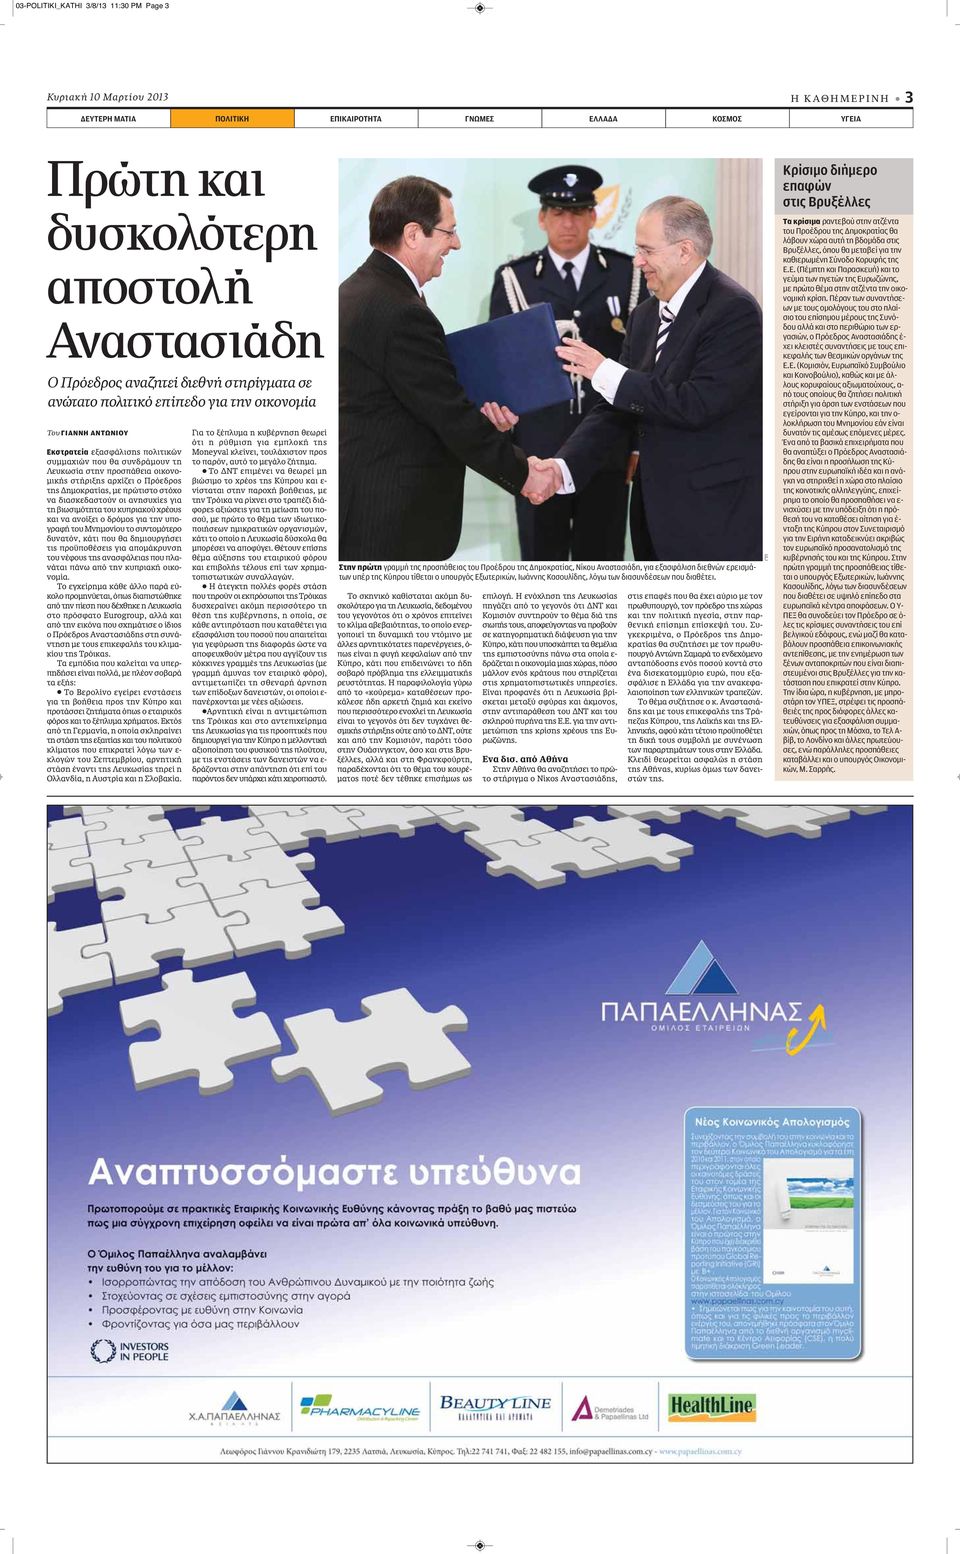 στήριξης αρχίζει ο Πρόεδρος της Δημοκρατίας, με πρώτιστο στόχο να διασκεδαστούν οι ανησυχίες για τη βιωσιμότητα του κυπριακού χρέους και να ανοίξει ο δρόμος για την υπογραφή του Μνημονίου το